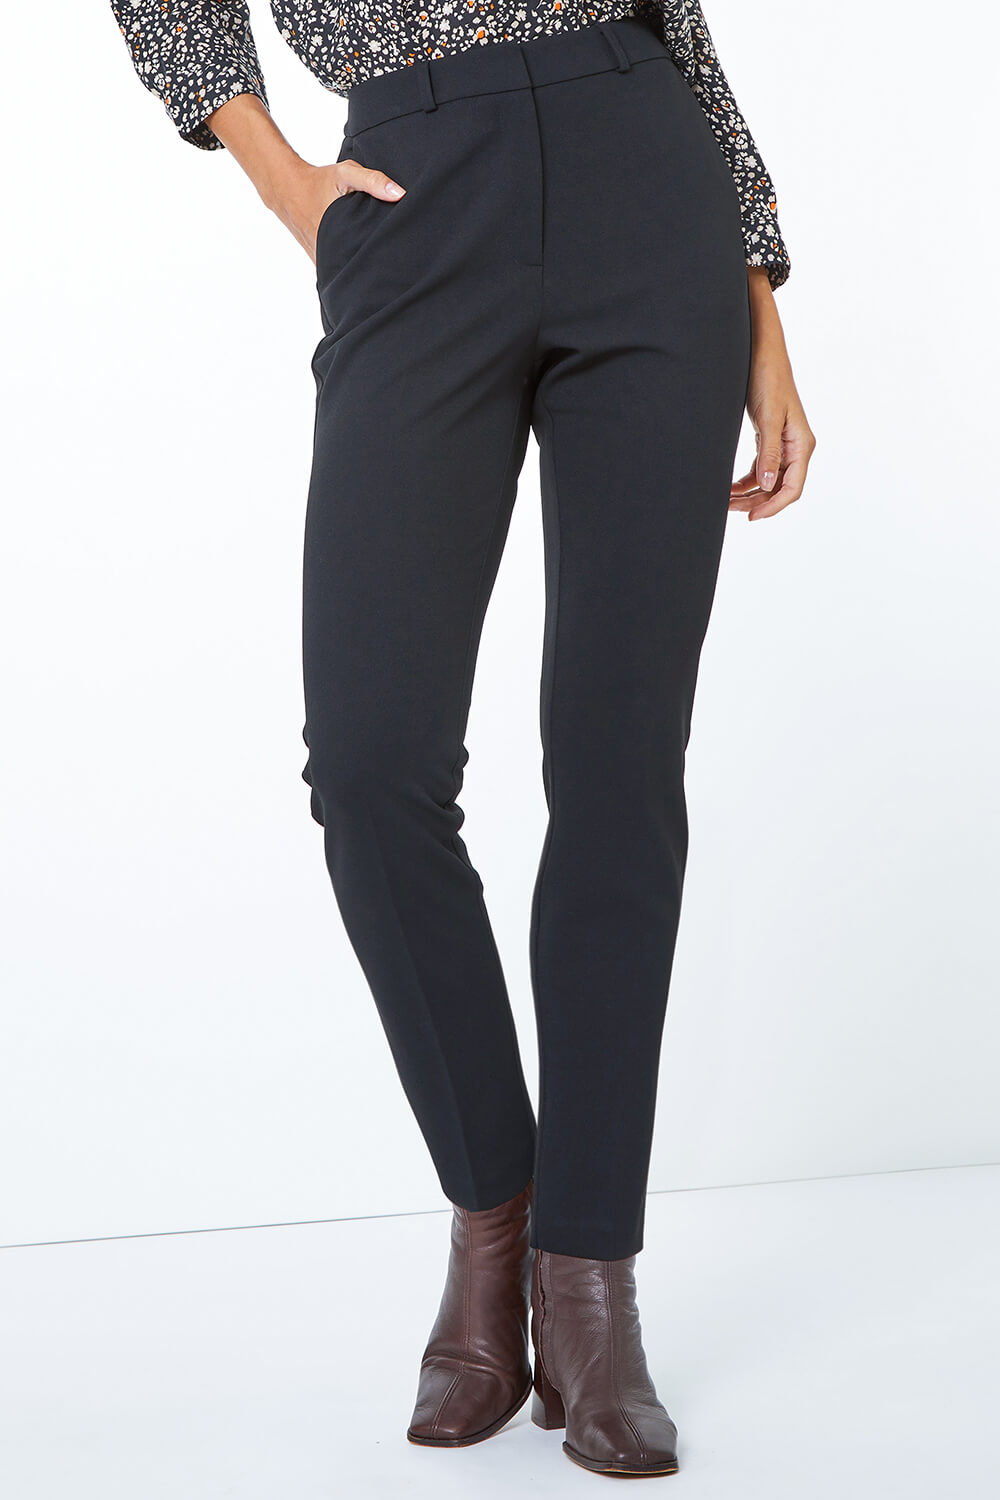 Black Tapered Leg Smart Trouser, Image 5 of 5